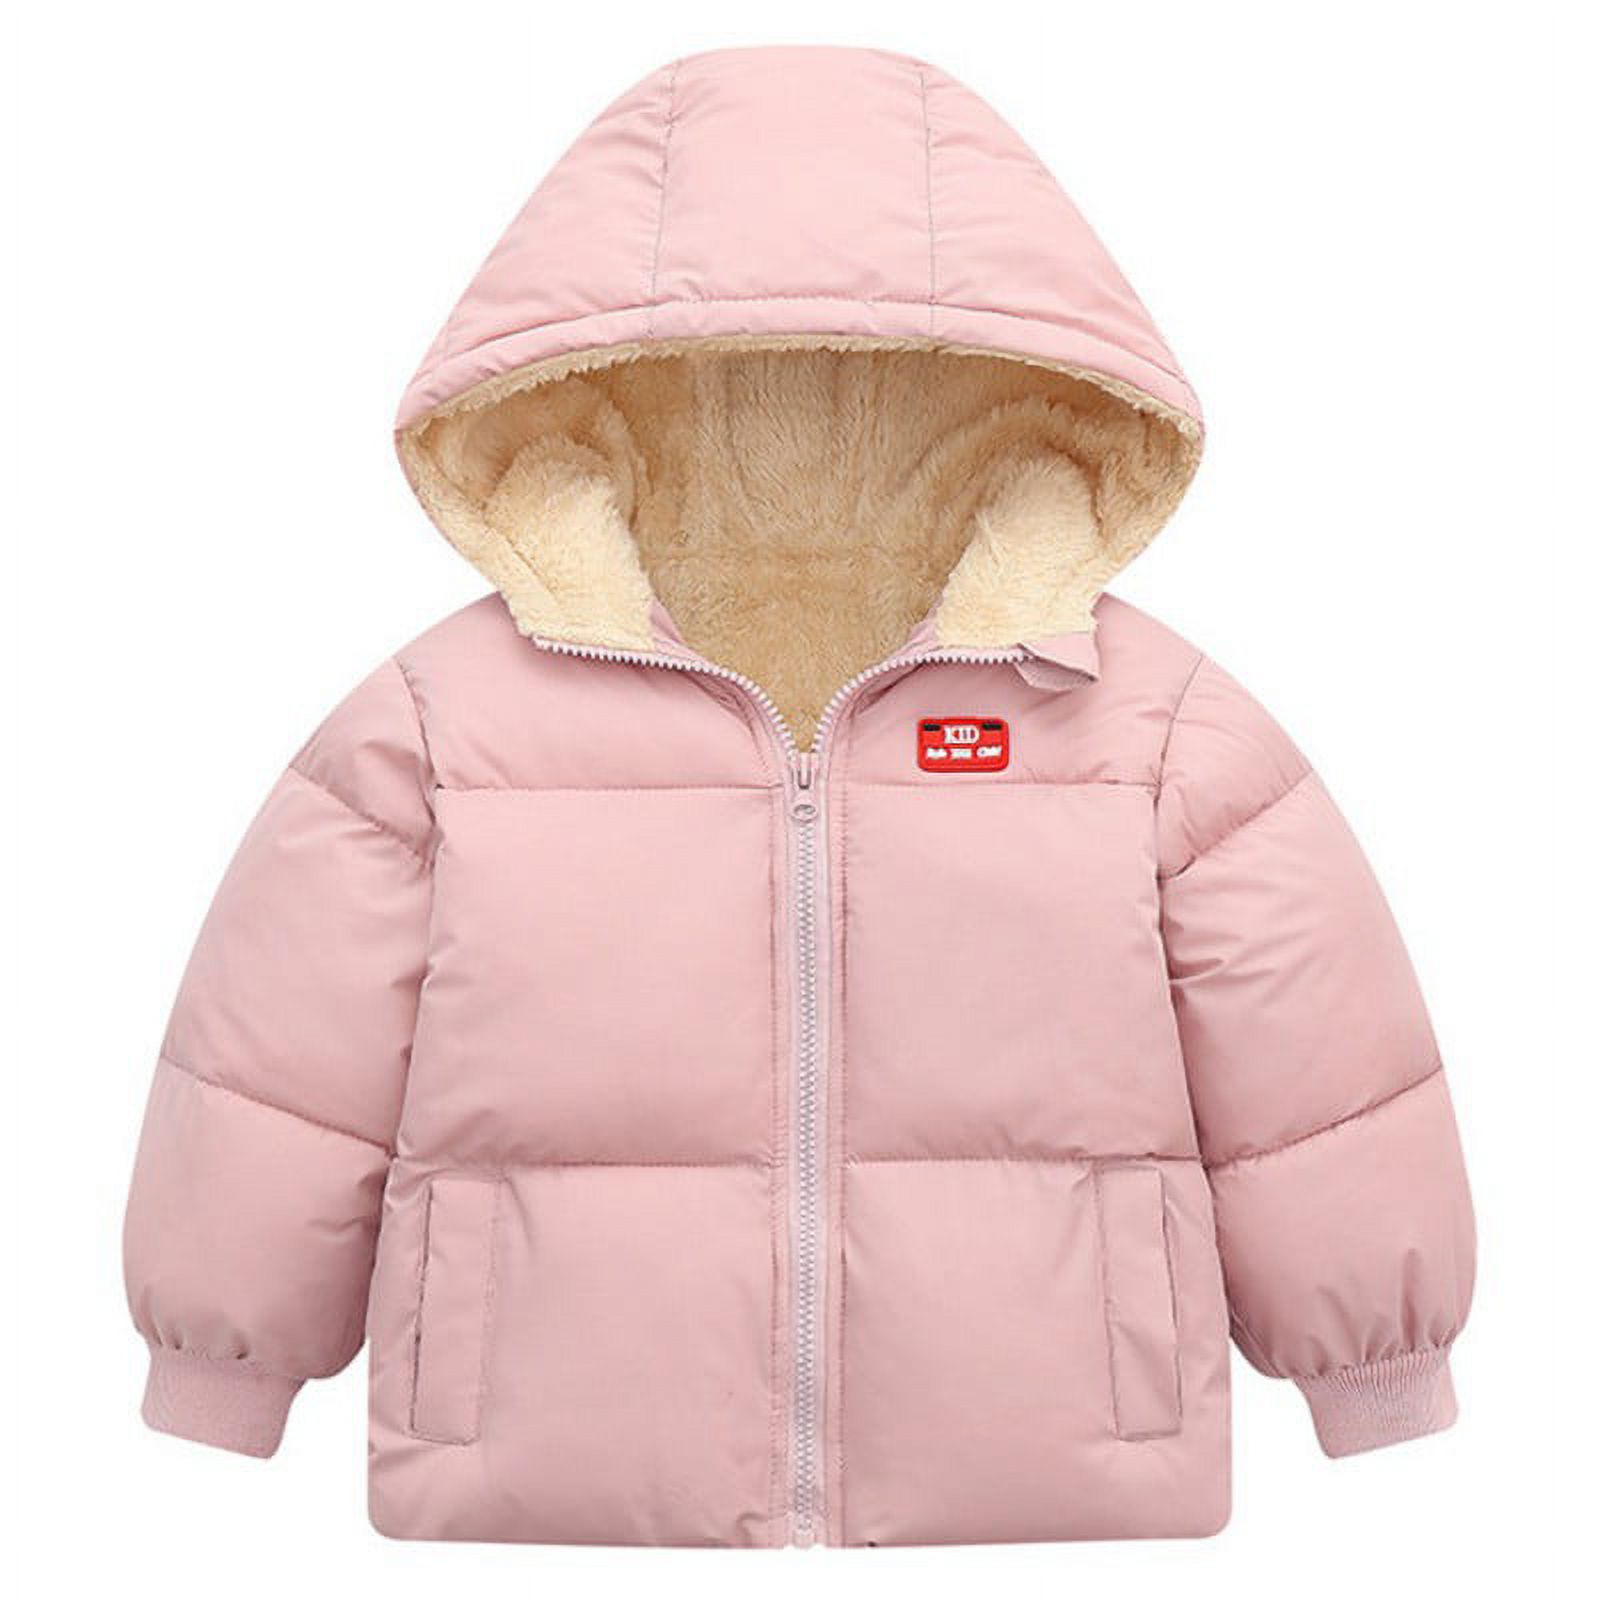 Boys Girls Hooded Down Jacket Winter Warm Fleece Coat Windproof Zipper Puffer Outerwear 18M-6T - image 1 of 5